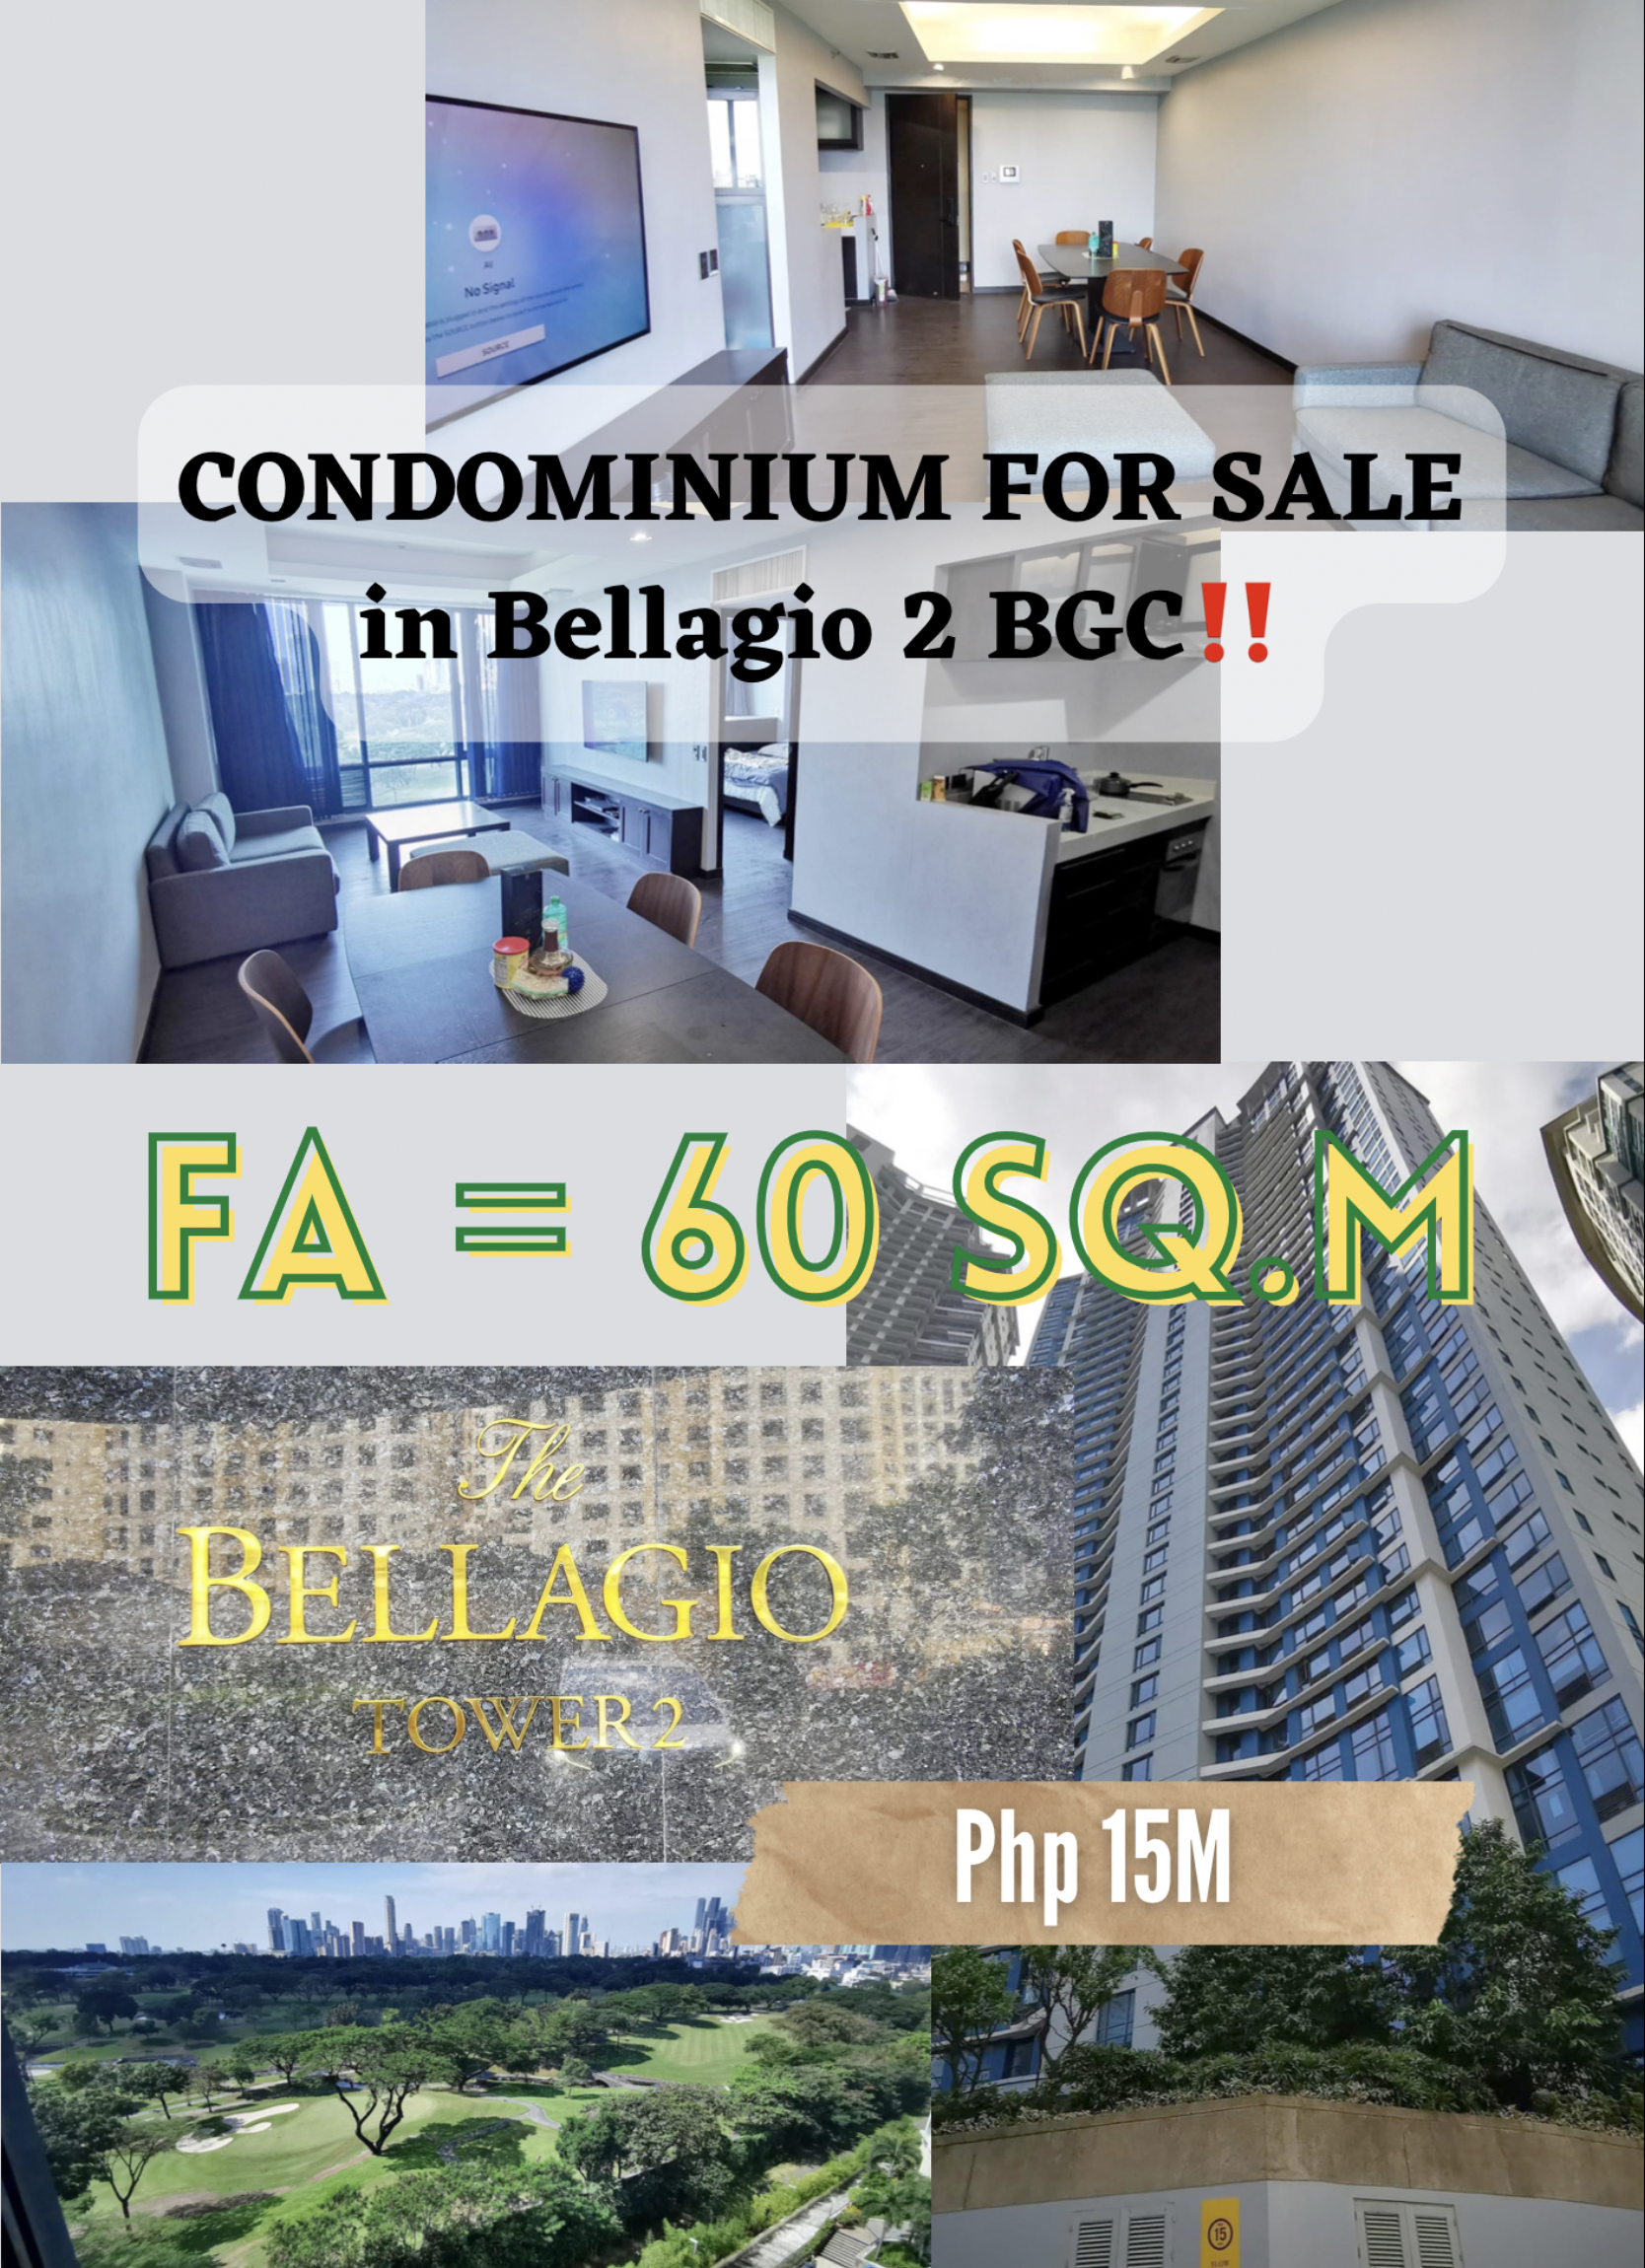 CONDOMINIUM FOR SALE in Bellagio 2 BGC, Taguig‼️